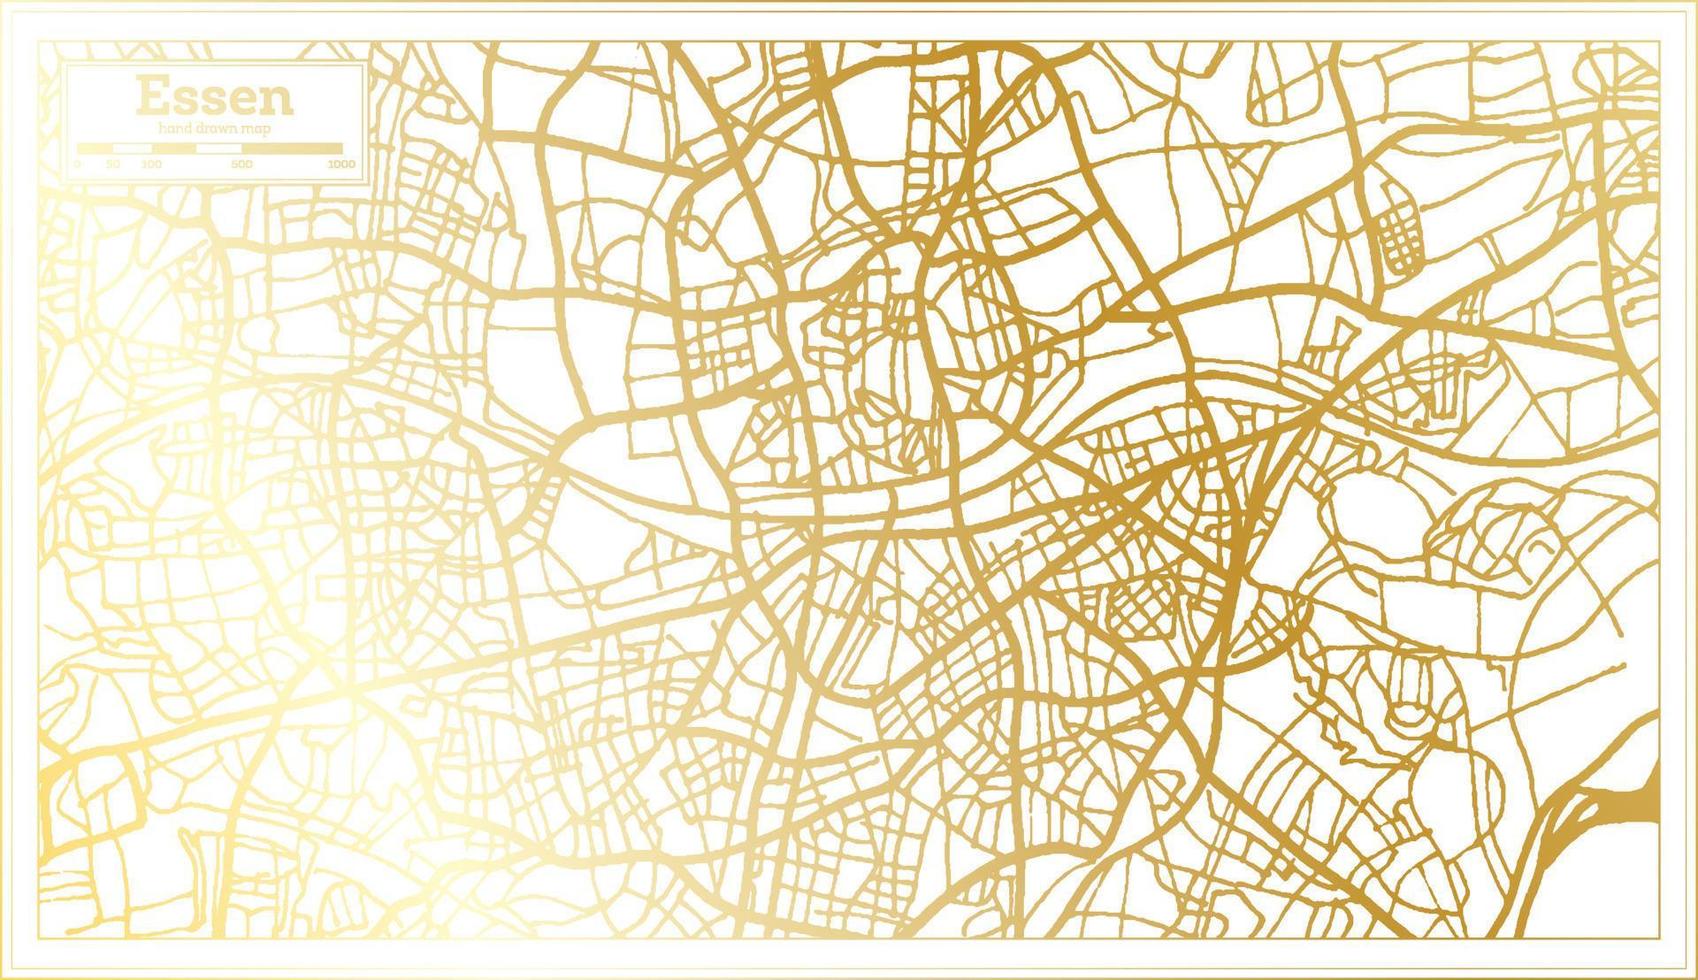 essen Duitsland stad kaart in retro stijl in gouden kleur. schets kaart. vector